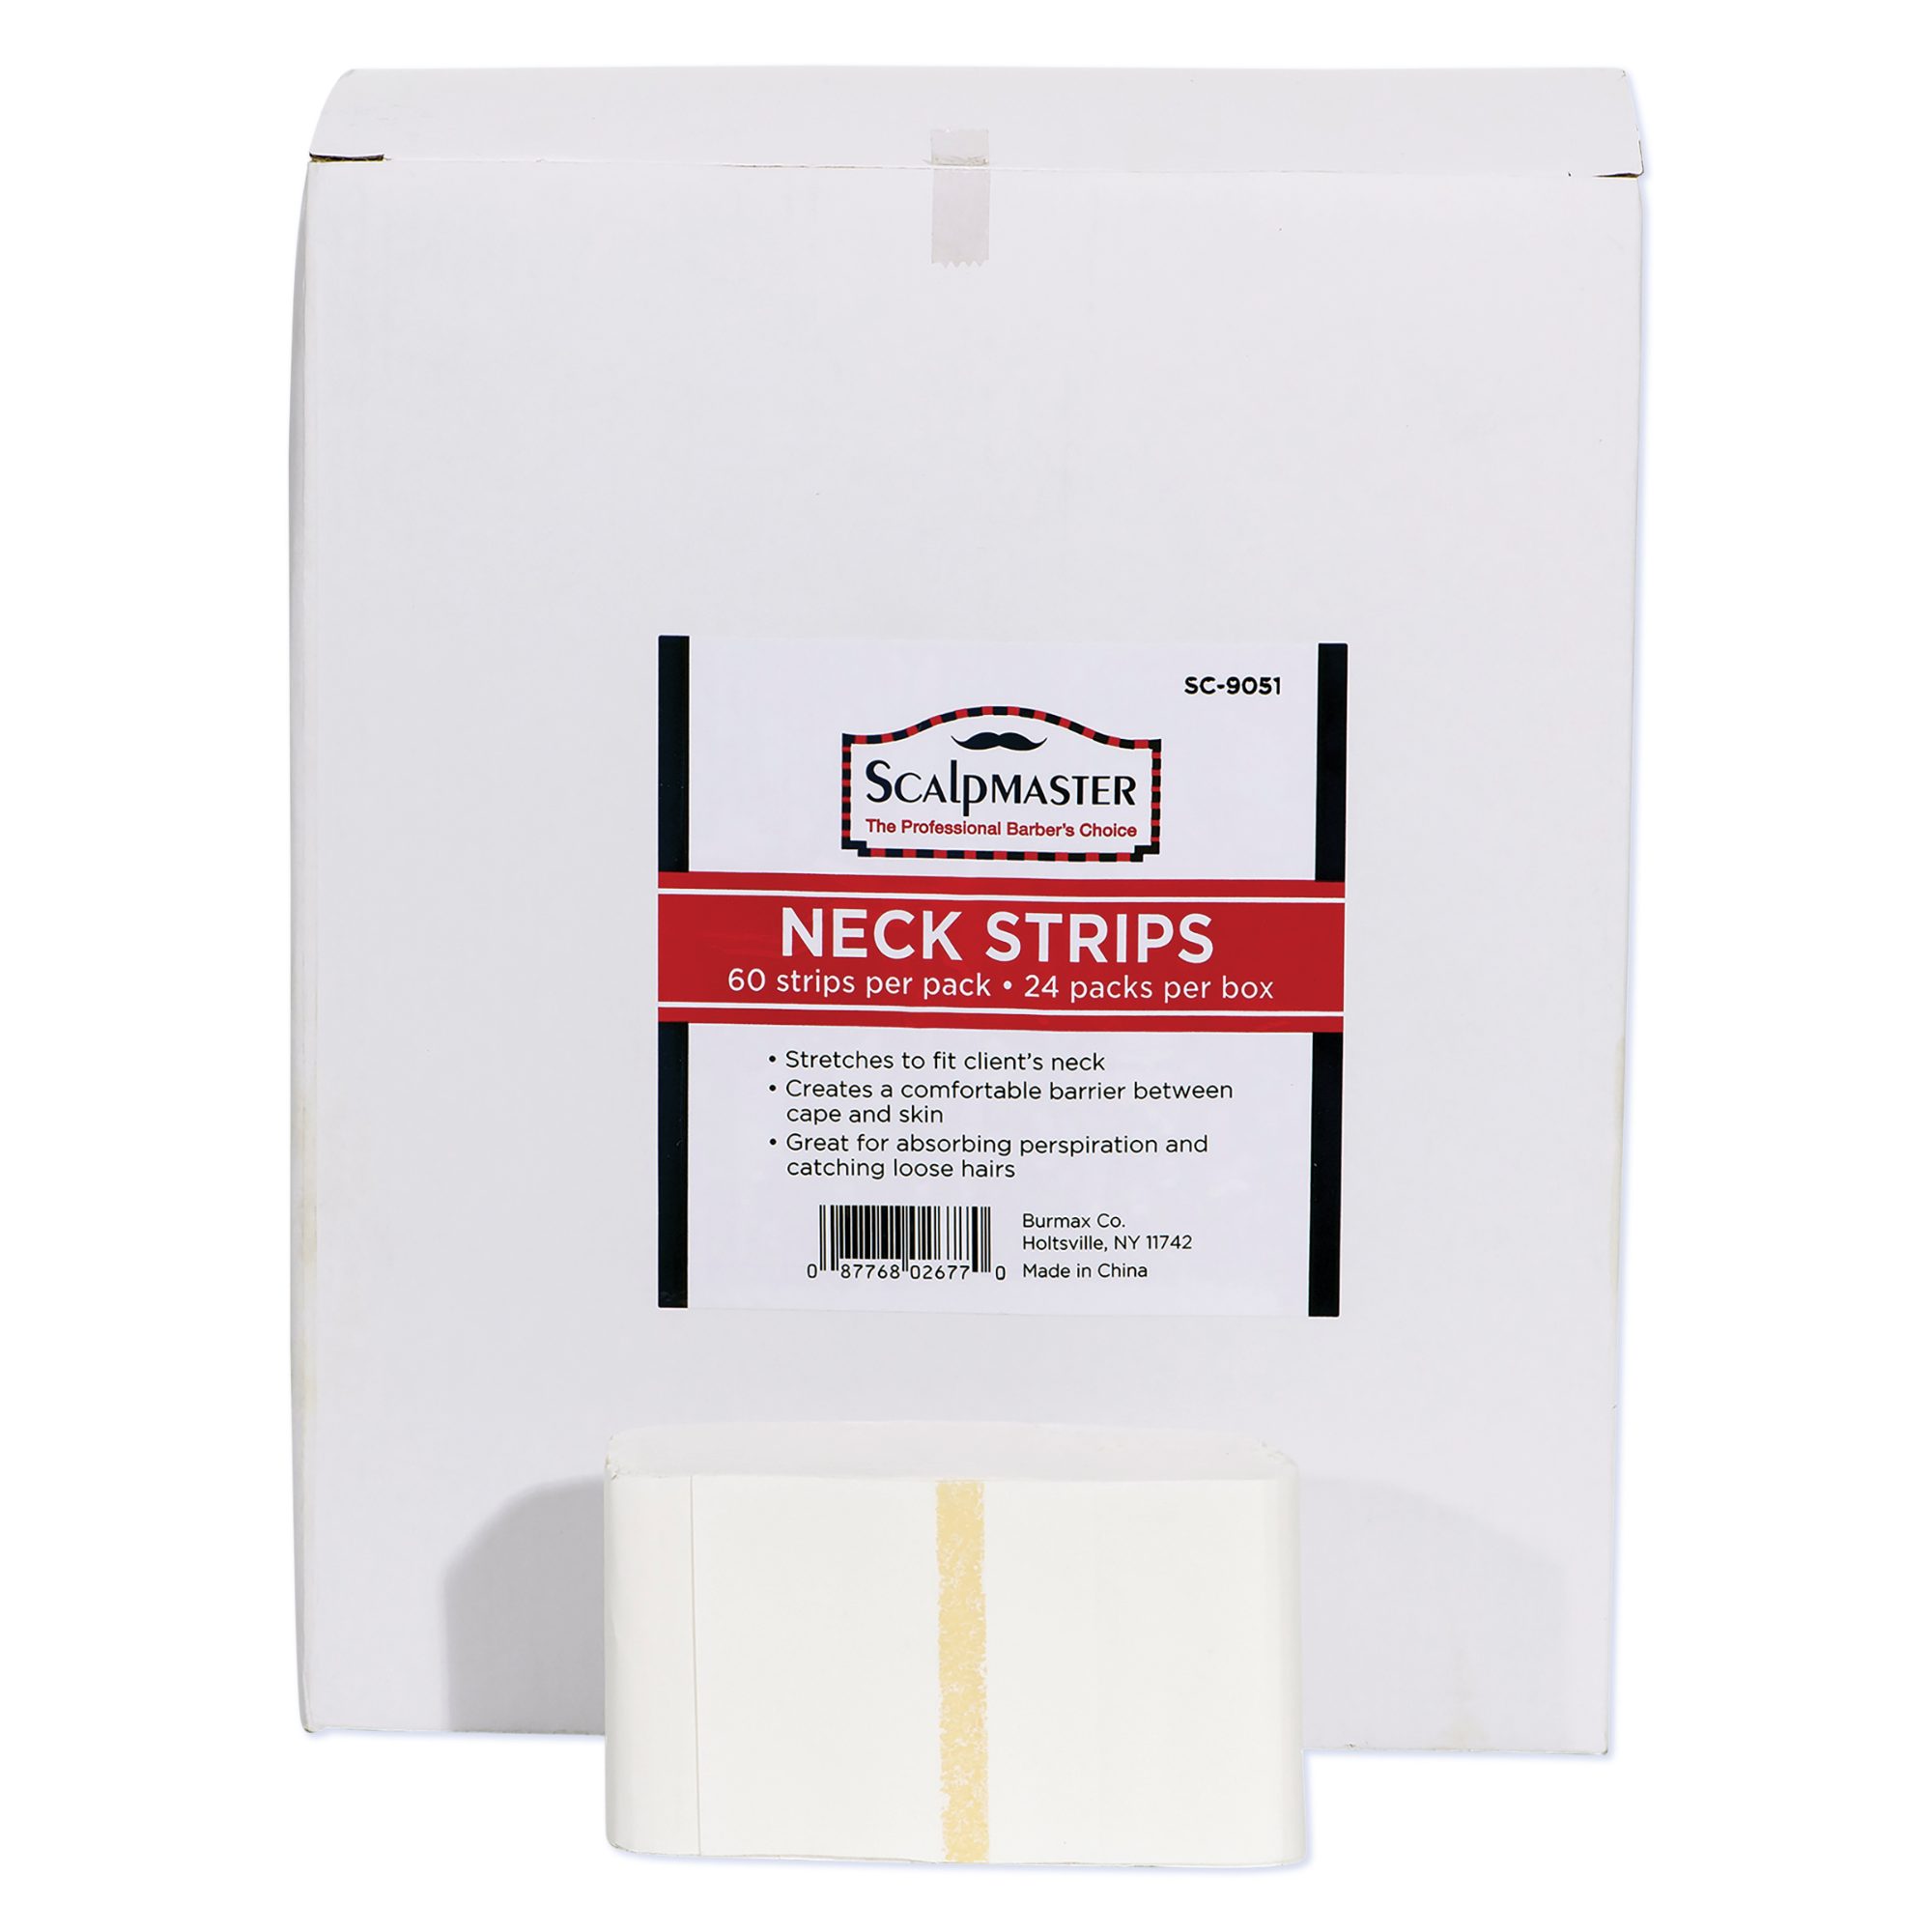 Neck Strips, box of 24 packs